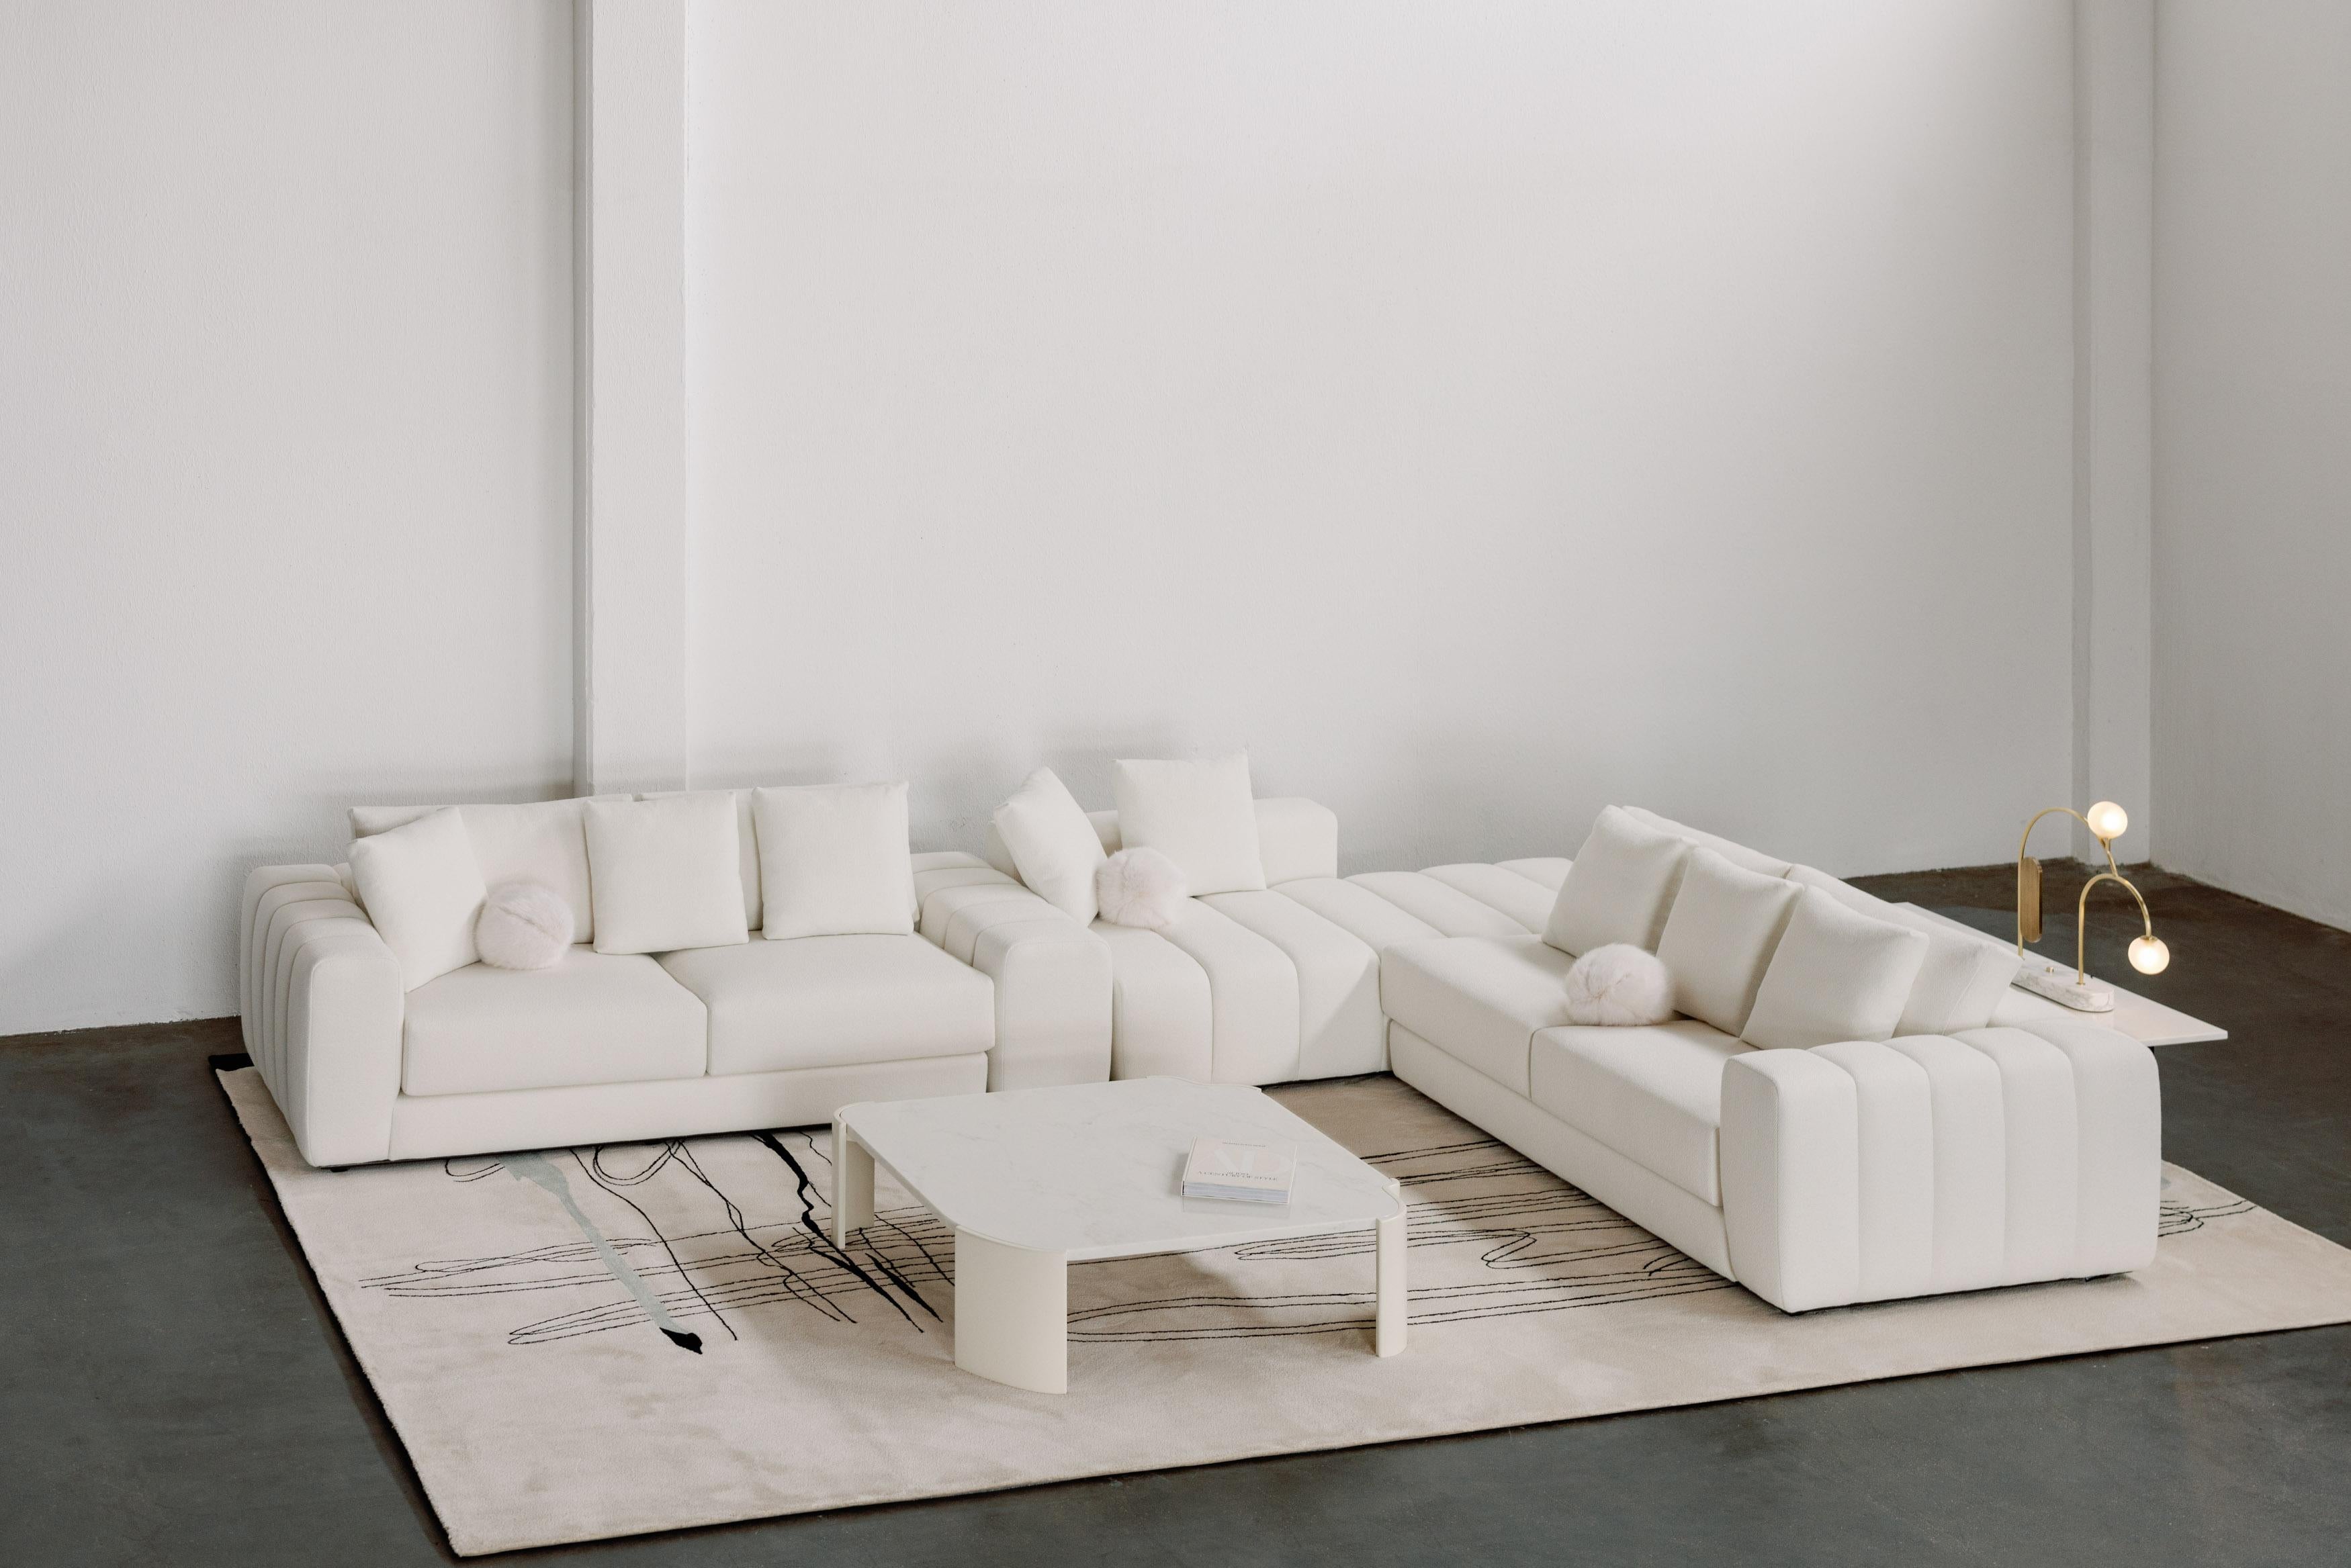 Coast Mudular Sofa, Collection'S Contemporary, handgefertigt in Portugal - Europa von Greenapple.

Das moderne, modulare Sofa Coast wurde entwickelt, um jedem, der es wagt, sich tief zu entspannen, ein Gefühl der Ruhe und des Friedens zu vermitteln.